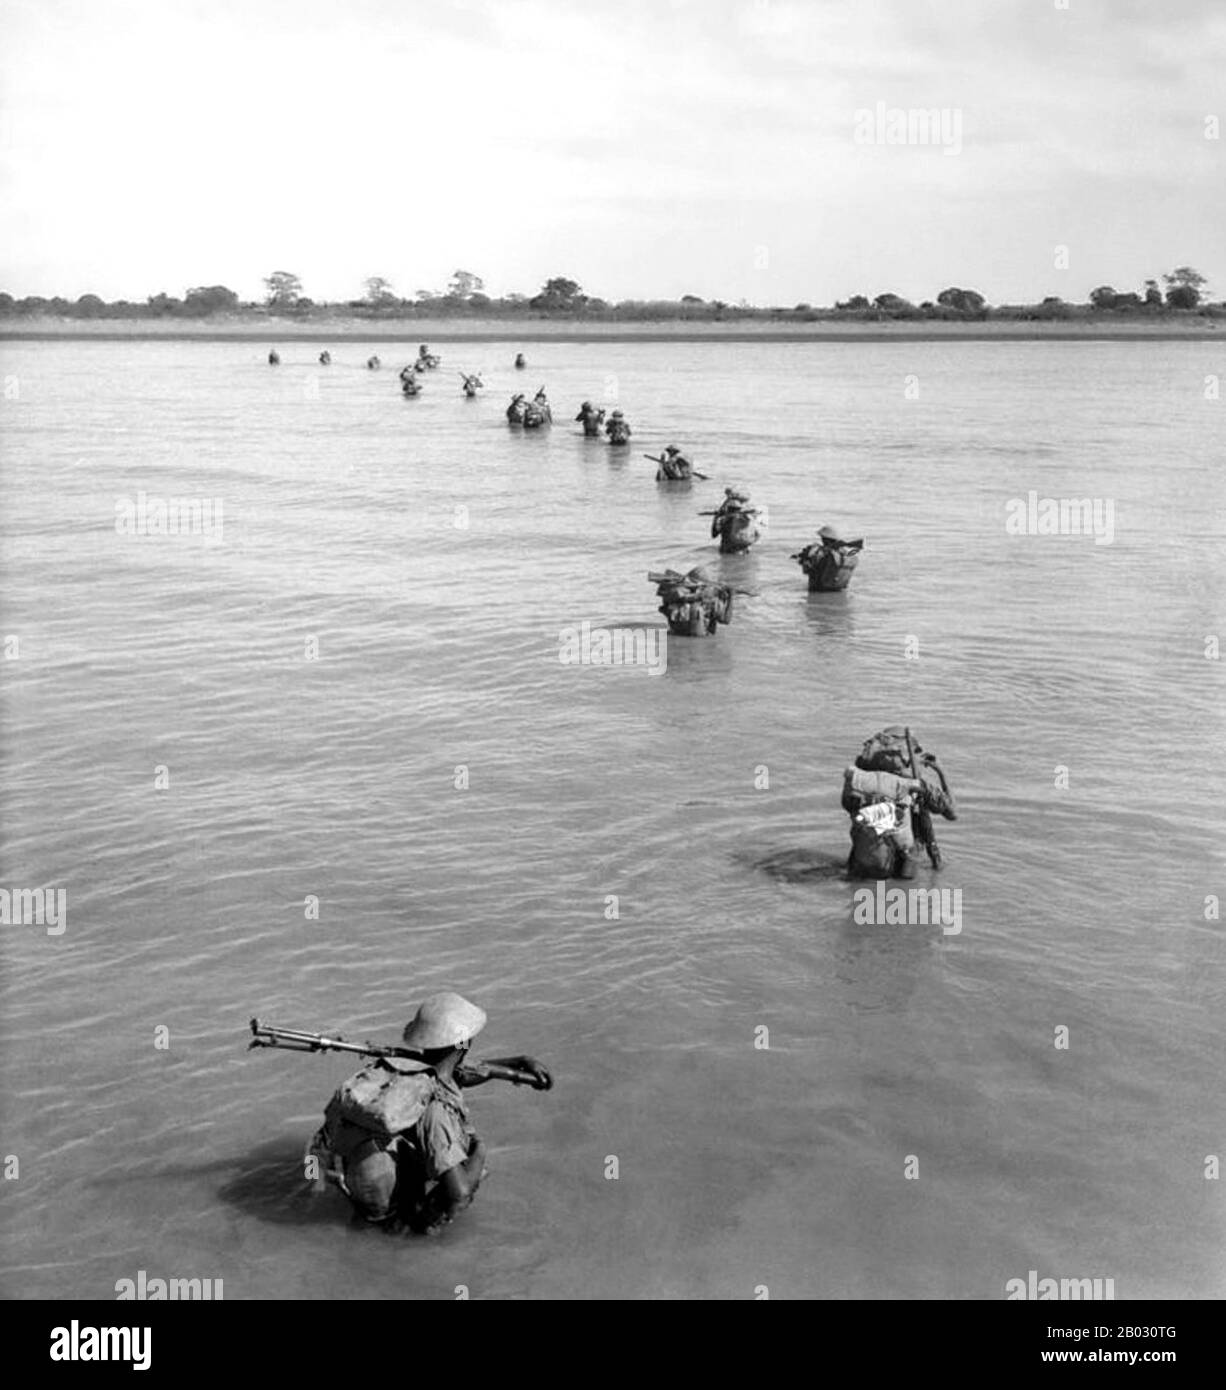 Ramree Island (auch spelt Yangbye Island oder Yanbye Island) ist eine Insel vor der Küste des Rakhine State, Birma. Die Fläche der Insel beträgt etwa 1.350 Quadratkilometer (520 sq mi) und das bevölkerungsreichste Zentrum ist Ramree. Während des zweiten Weltkriegs wurde die Schlacht auf der Insel Ramree im Januar und Februar 1945 im Rahmen der Offensive der British 14th Army 1944/45 an der Südfront der Burma Campaign ausgetragen. Am Ende der Schlacht wurden japanische Soldaten in die Sümpfe um die Insel gezwungen, und Salzwasserkrokodile sollen viele von ihnen gefressen haben. Stockfoto